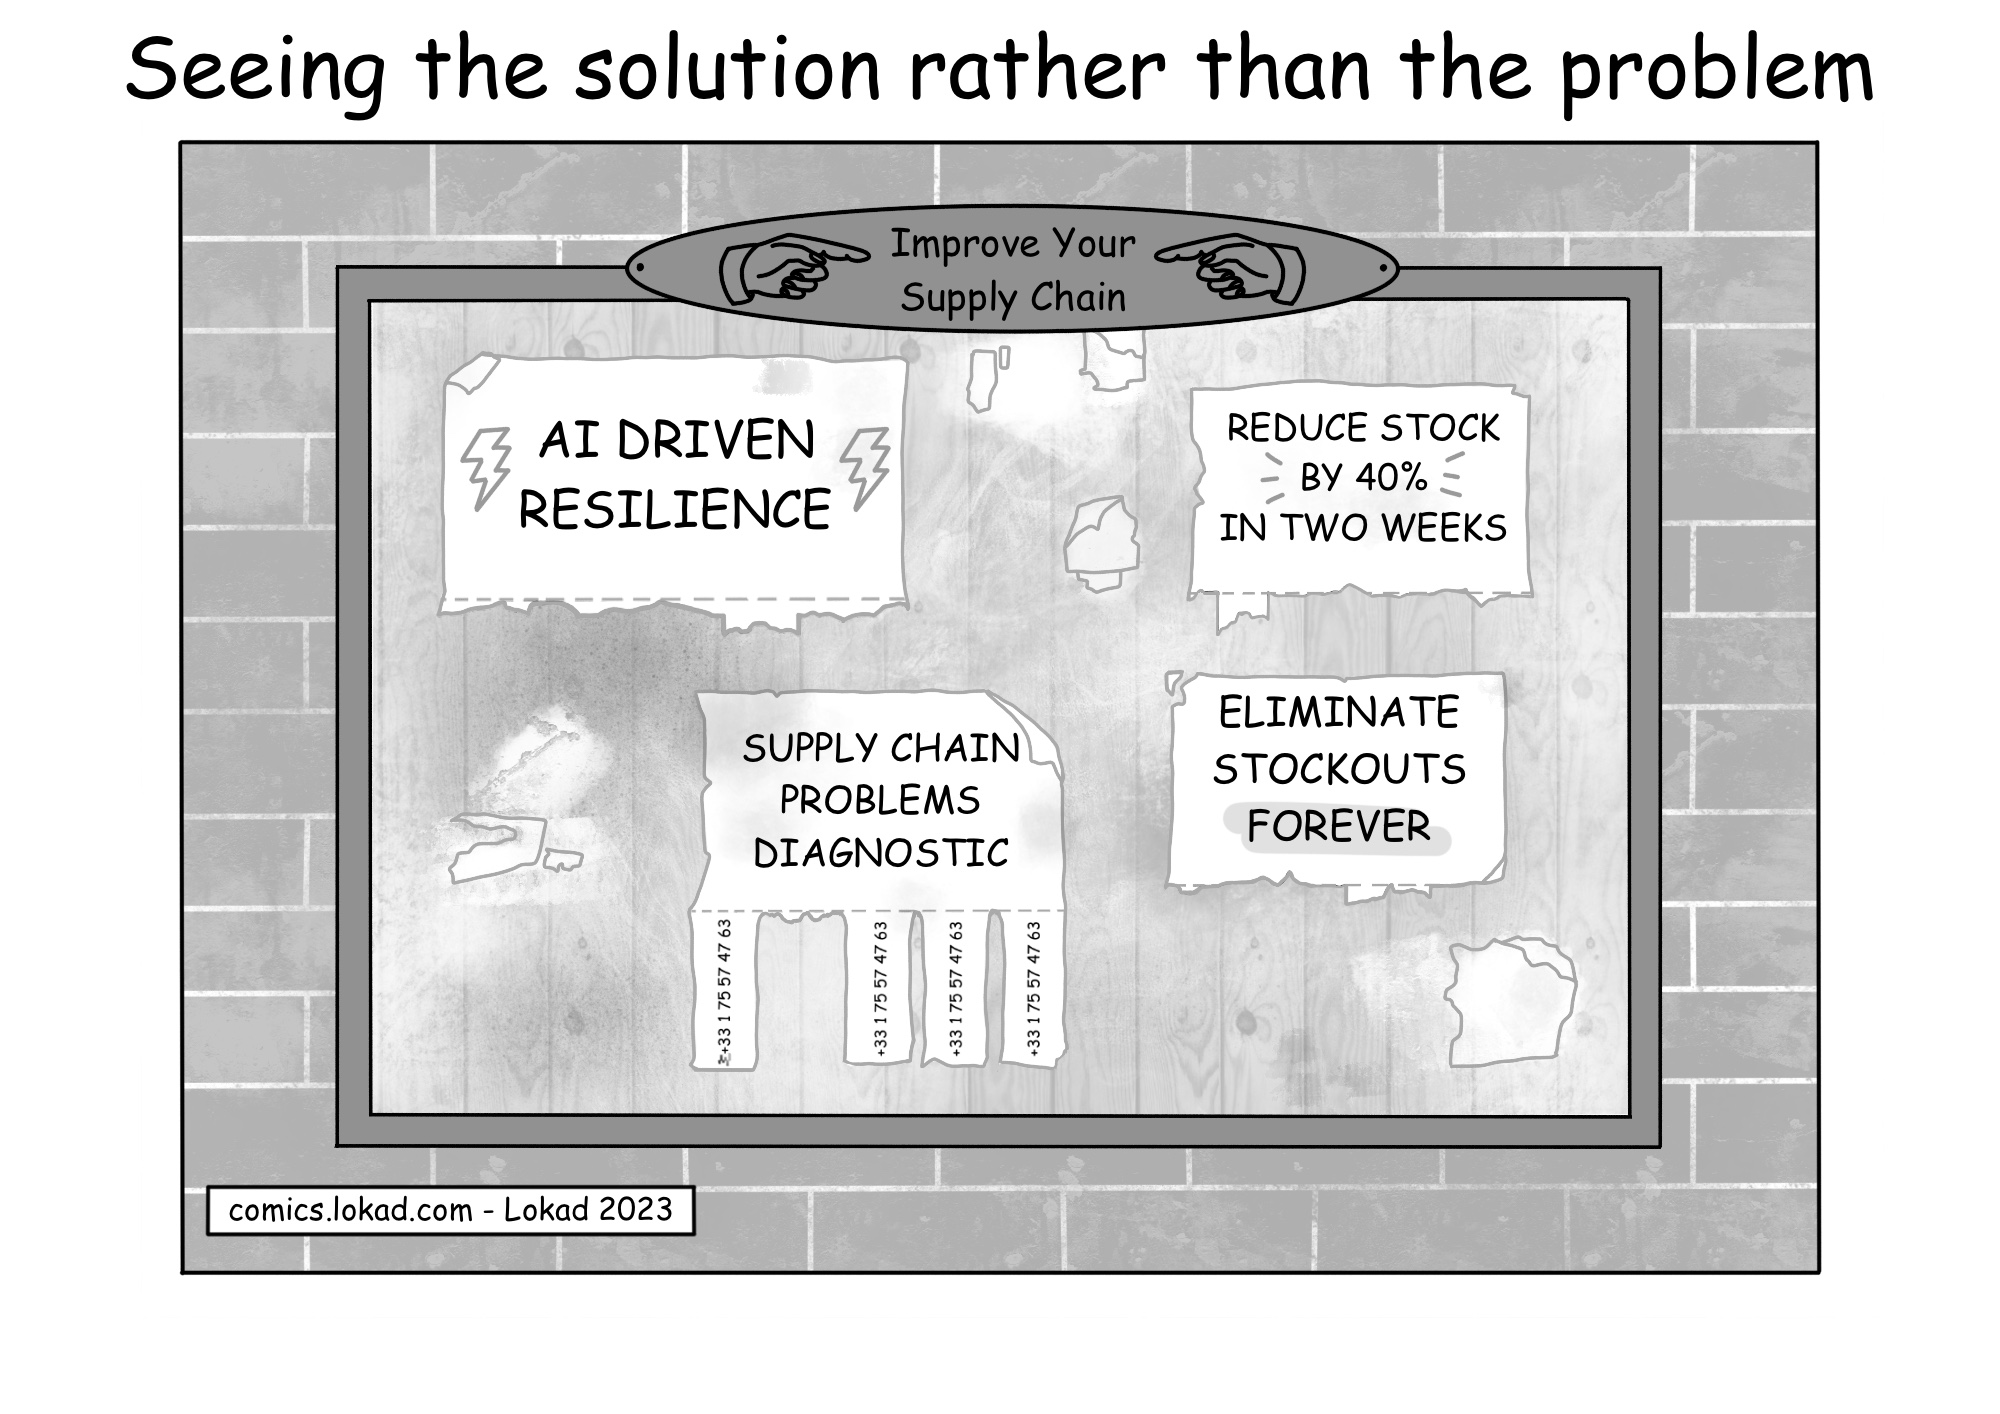 Comic de la série de supply chain de Lokad, intitulé 'Voir la solution plutôt que le problème', mettant en vedette un tableau d'affichage avec diverses annonces optimistes de fournisseurs proposant des solutions de supply chain telles que 'RÉSILIENCE ALIMENTÉE PAR L'IA', 'RÉDUIRE LES STOCKS DE 40% EN DEUX SEMAINES' et 'ÉLIMINER LES RUPTURES DE STOCK POUR TOUJOURS', tous manquant leurs bandes de contact car elles ont été arrachées. En revanche, une autre annonce proposant un 'DIAGNOSTIC DES PROBLÈMES DE SUPPLY CHAIN' n'a qu'une seule bande enlevée, mettant en évidence la disparité entre ces revendications ambitieuses et le manque apparent d'intérêt pour comprendre les problèmes sous-jacents avant de tenter de les résoudre.